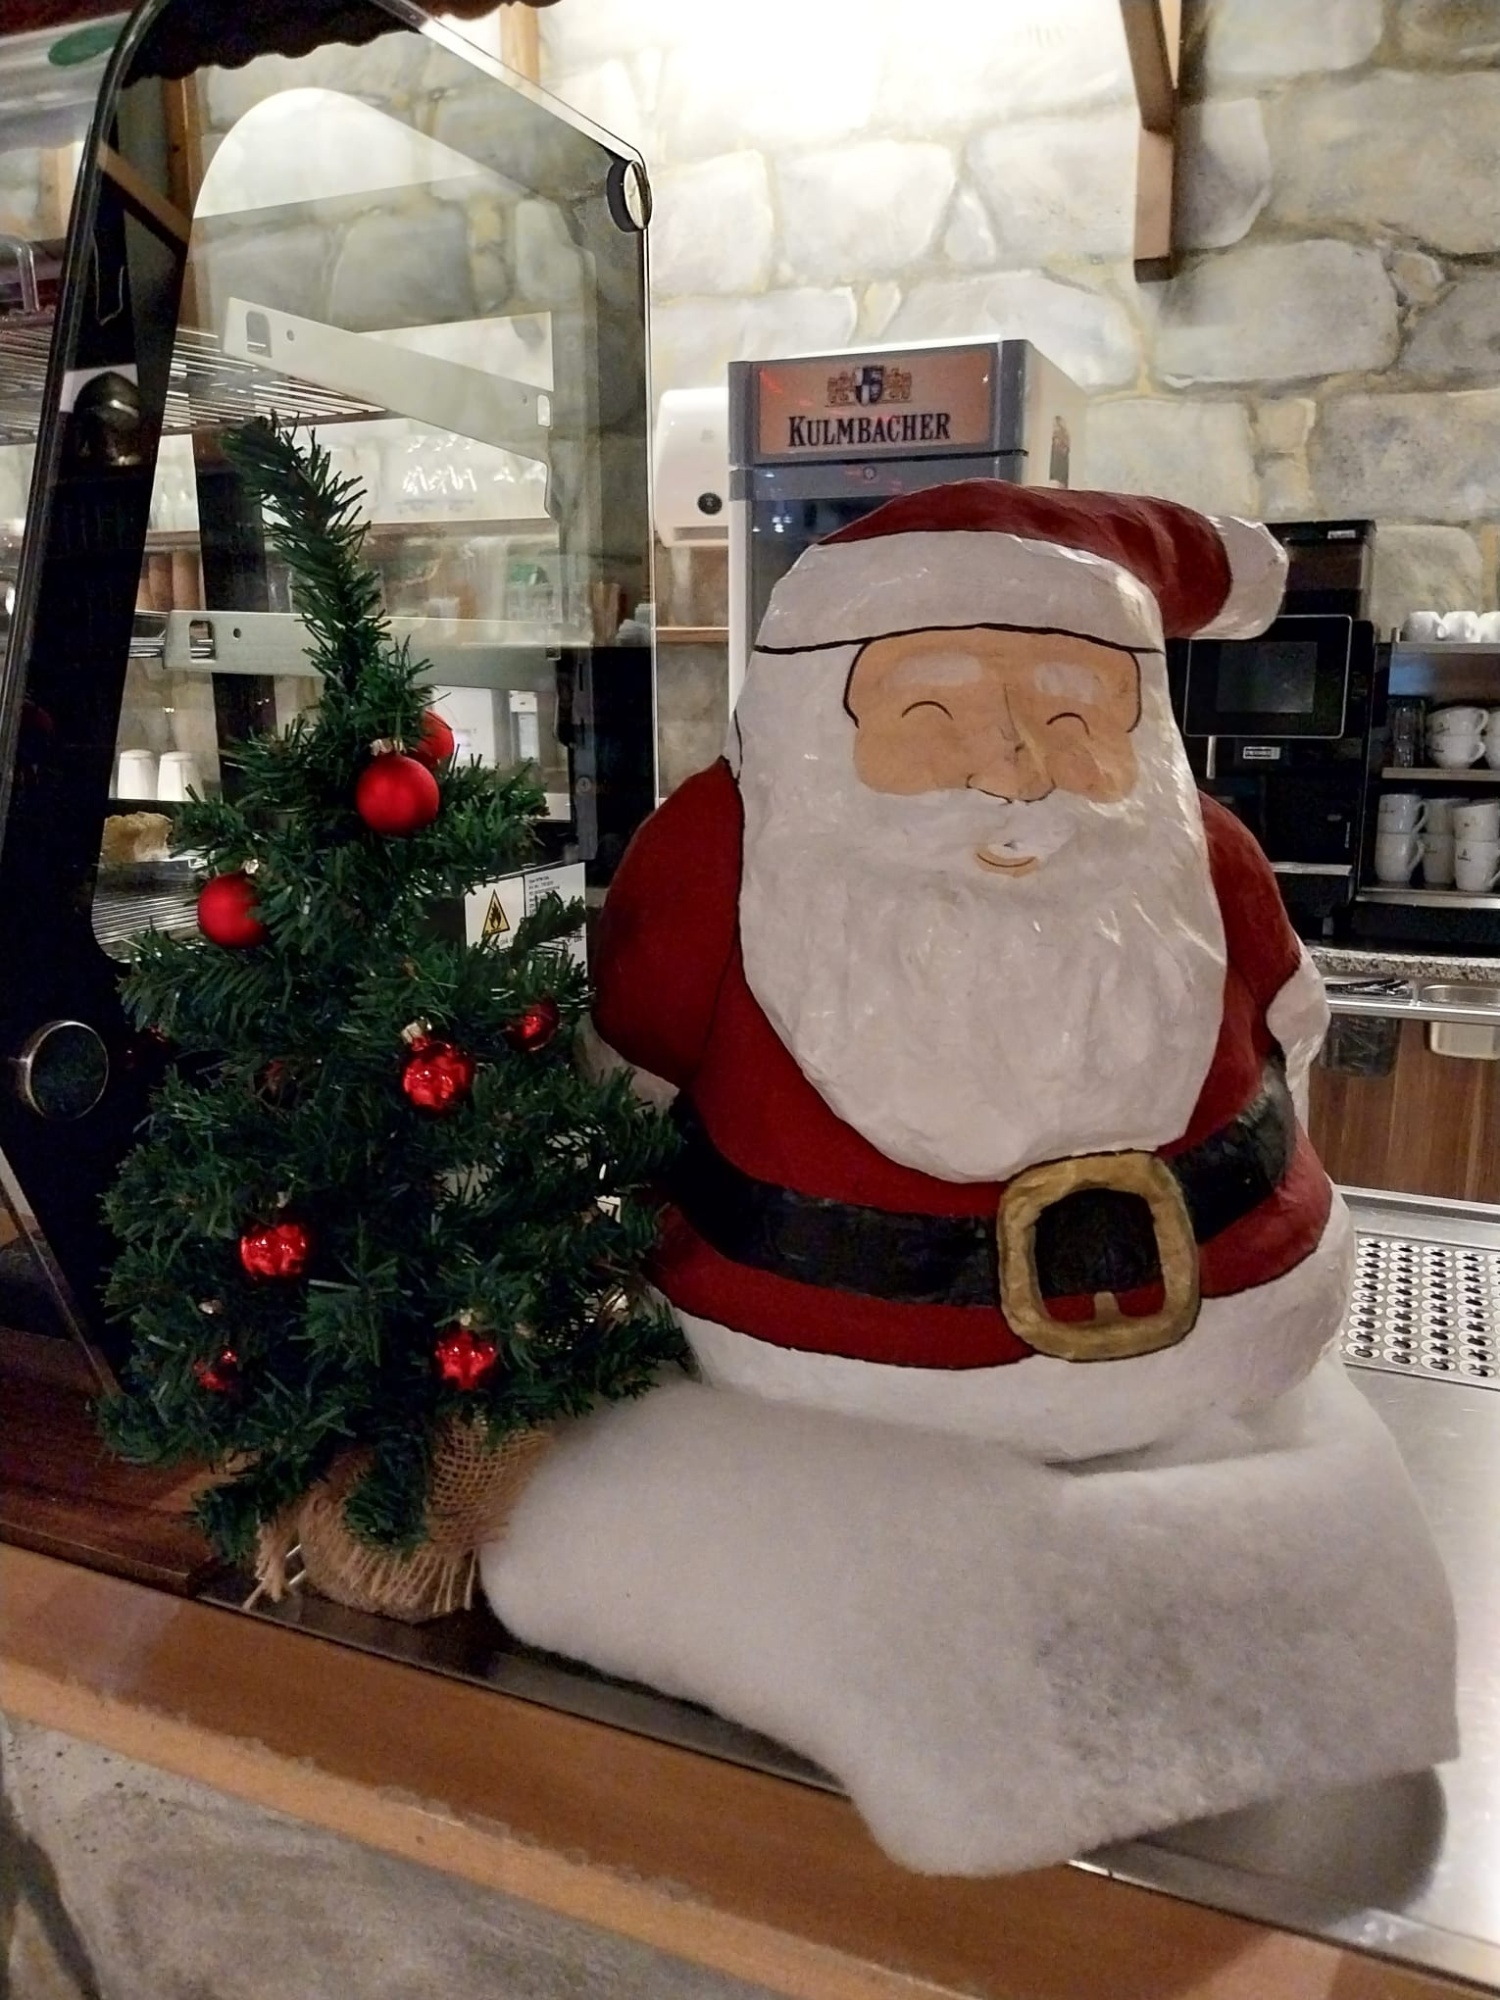 Links ein kleiner Christbaum mit roten Kugeln, daneben grinsend der Weihnachtsmann mit weißem Bart, roter Mütze und rotem Gewand.